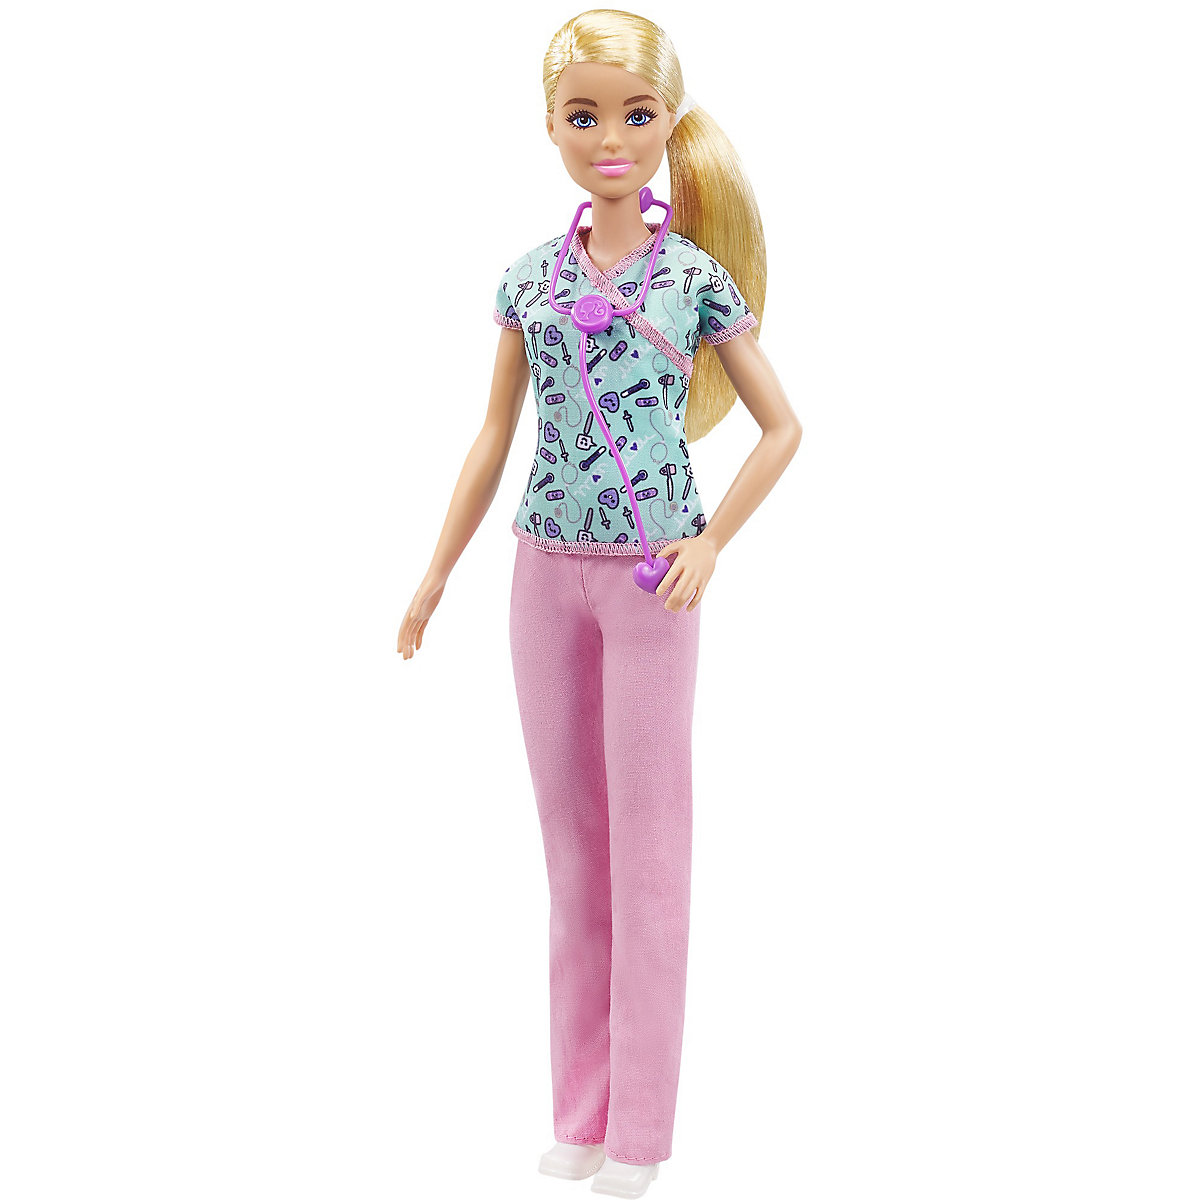 Barbie Krankenschwester Puppe Karriere-Barbie Anziehpuppe